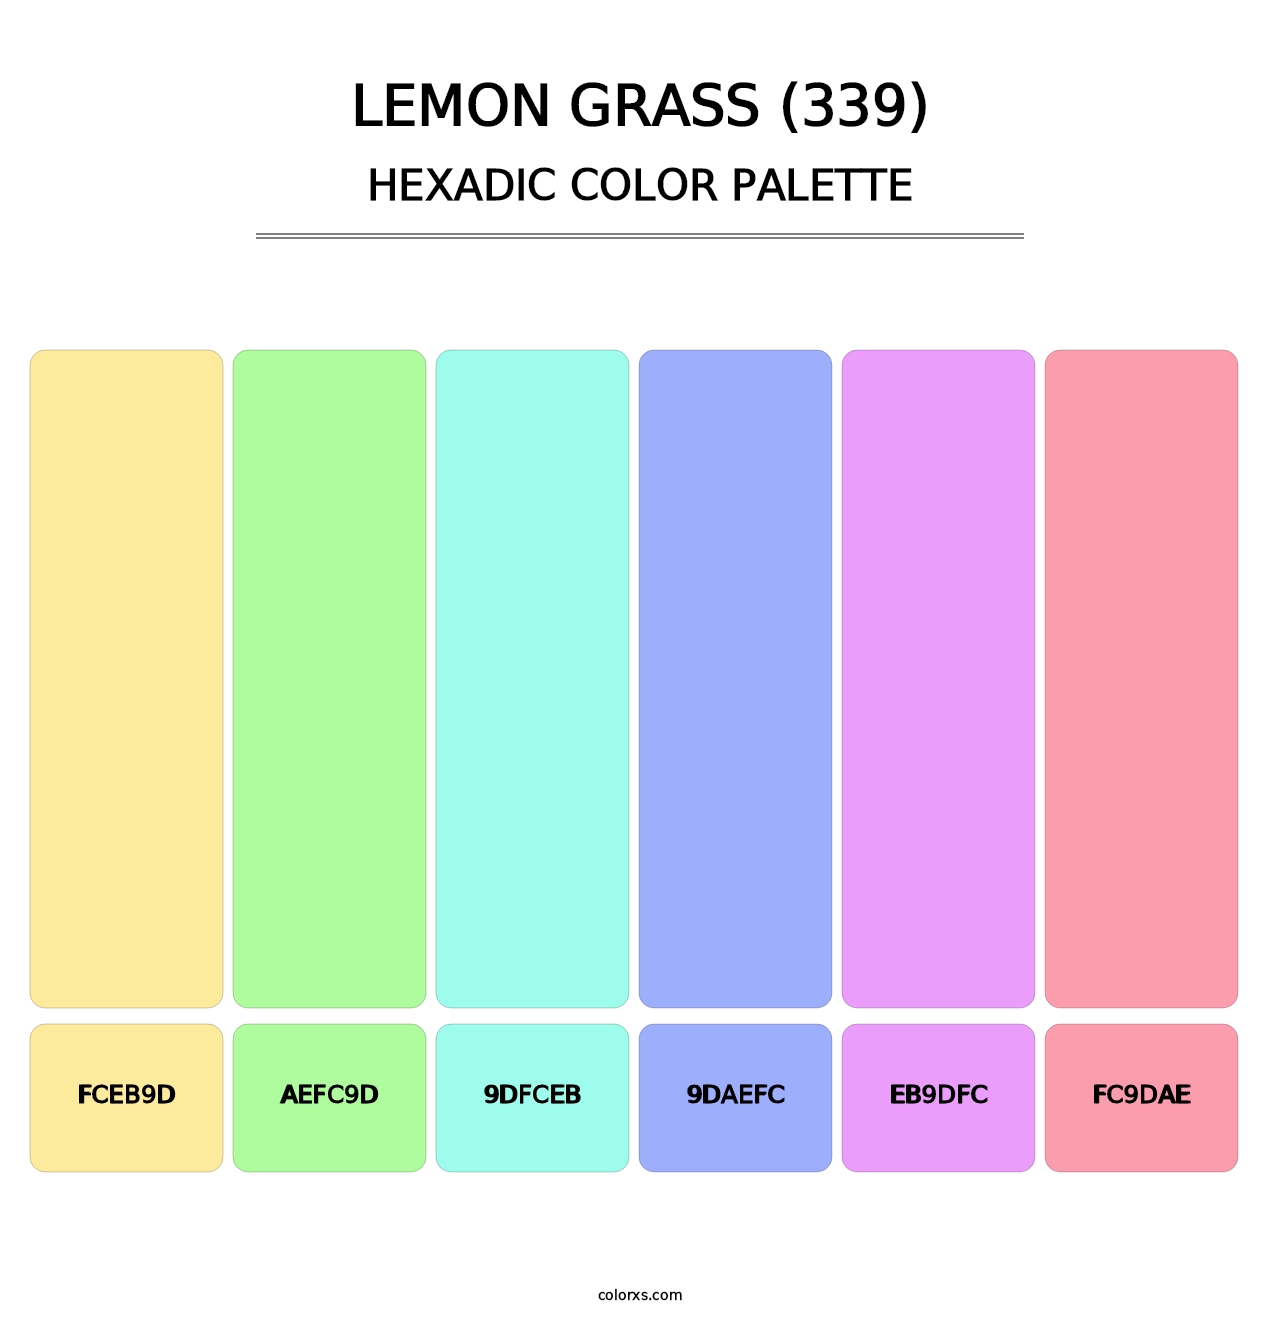 Lemon Grass (339) - Hexadic Color Palette